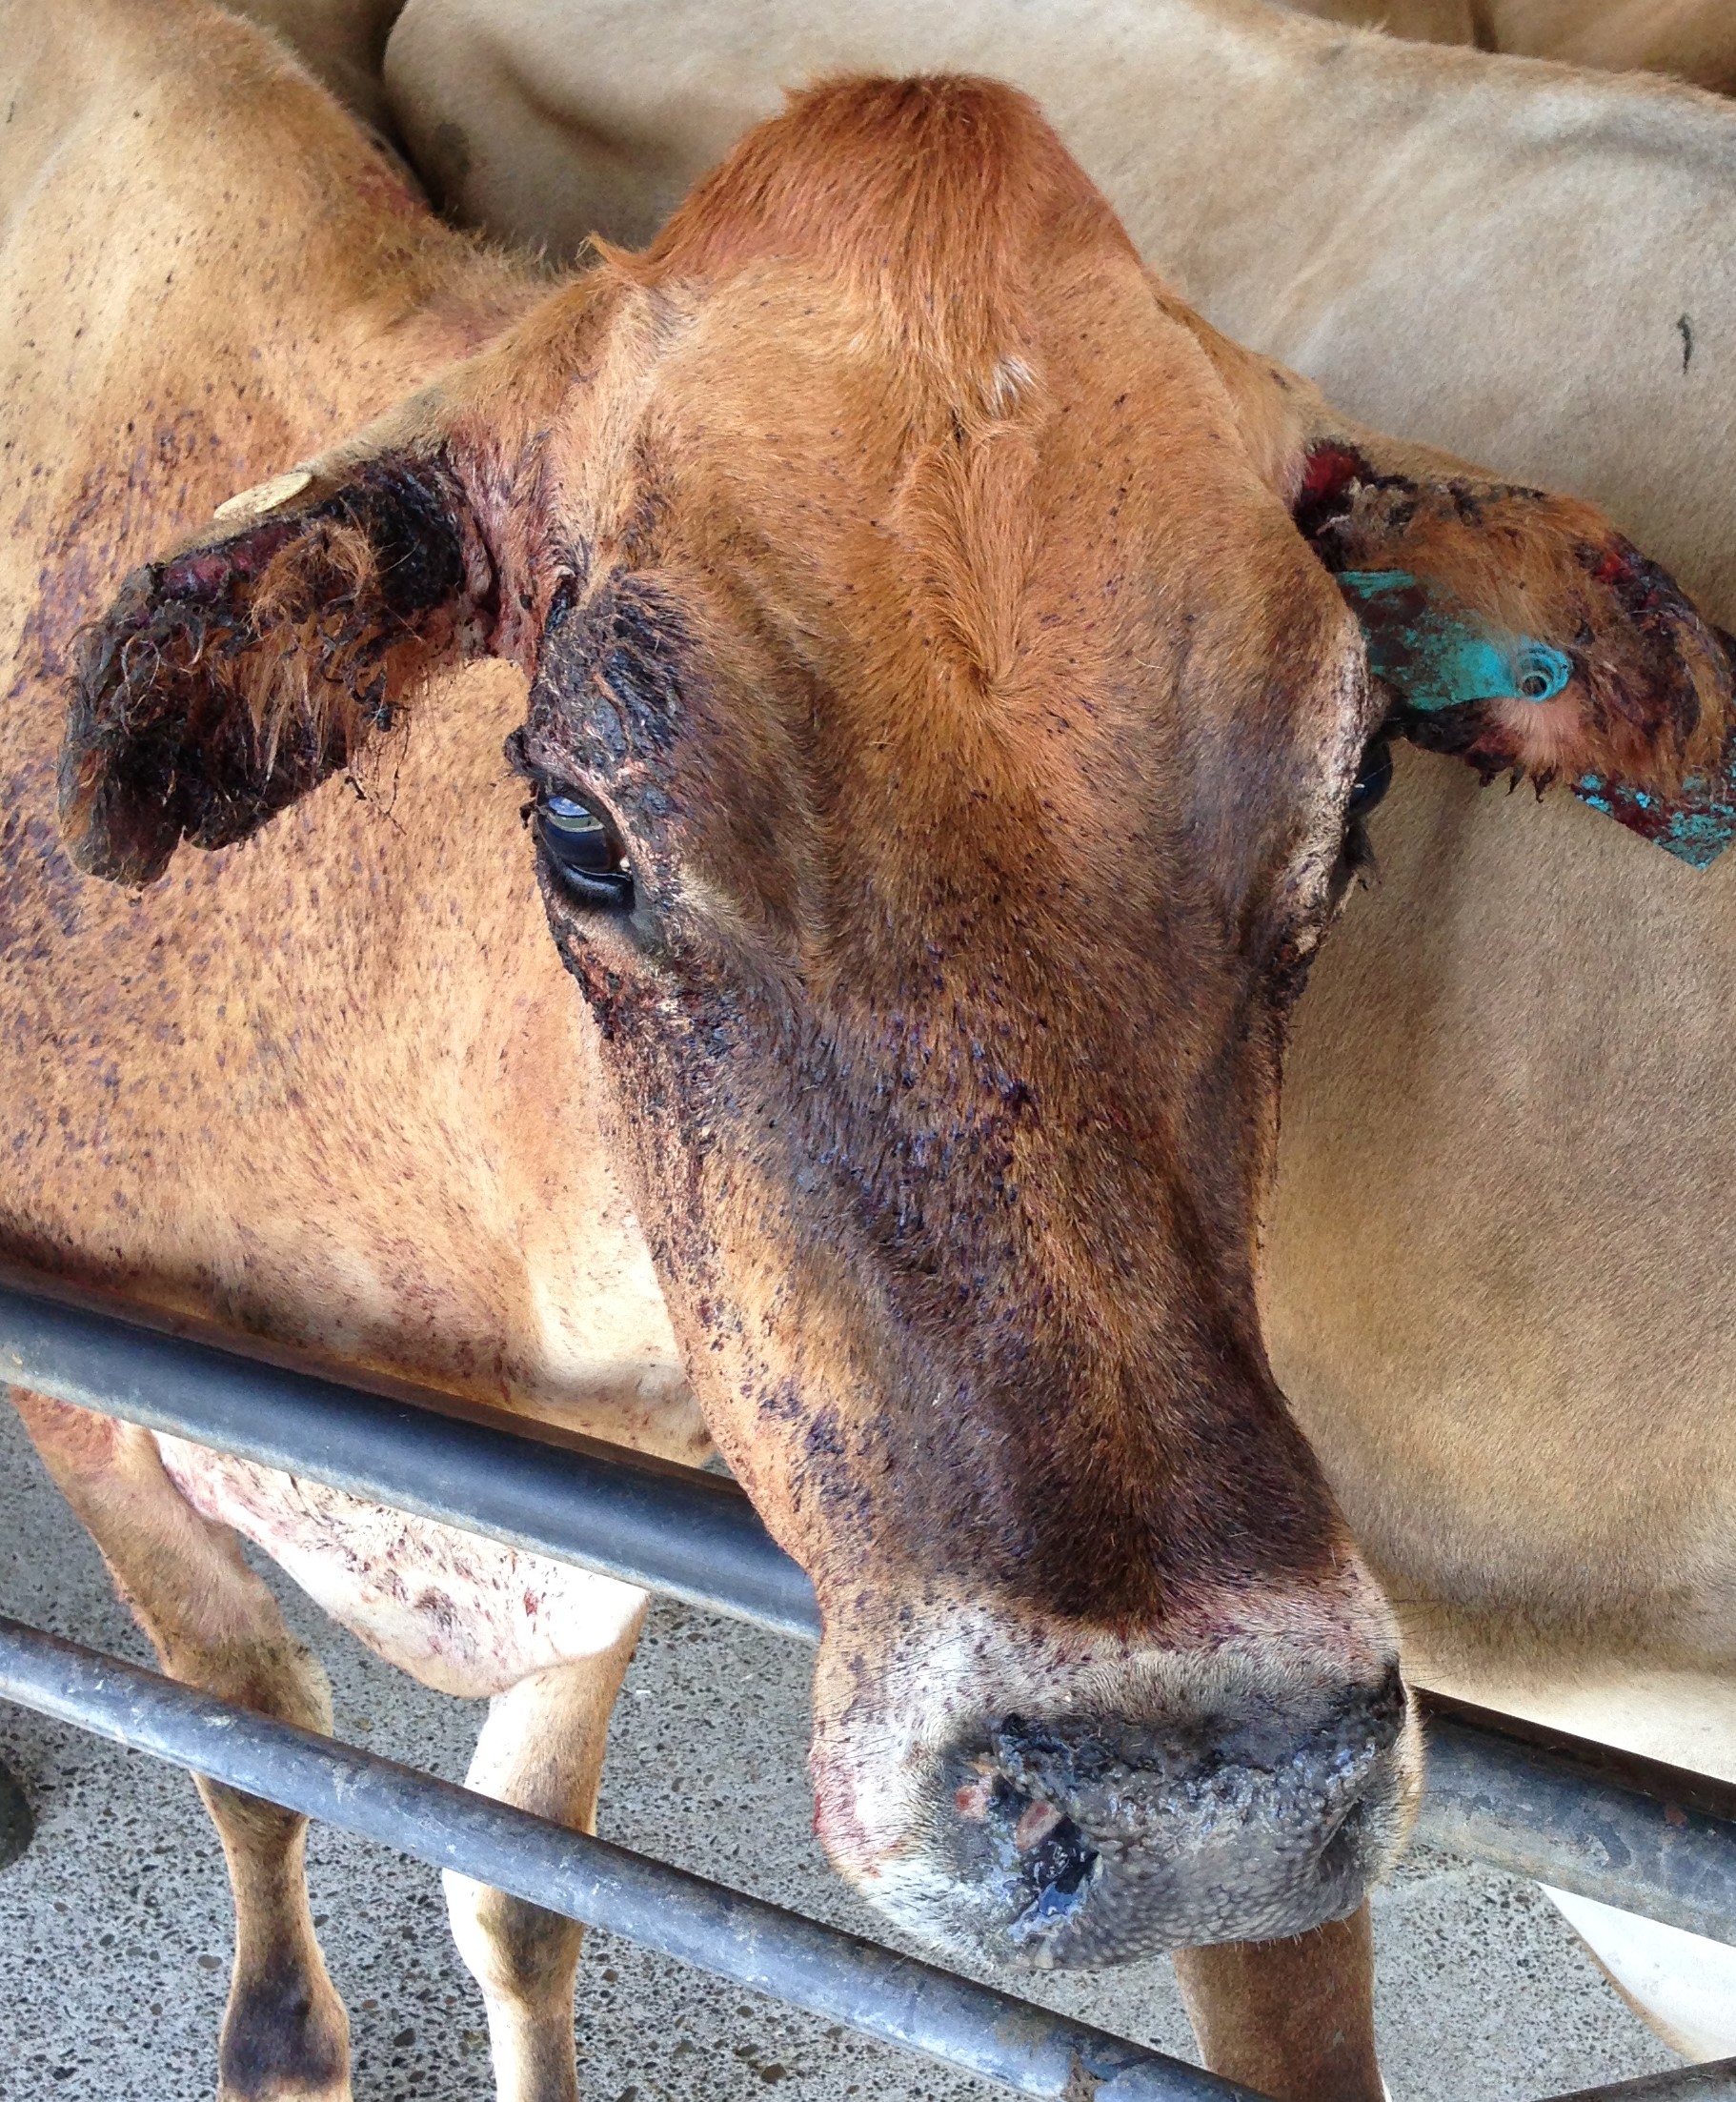 Facial eczema on a cow